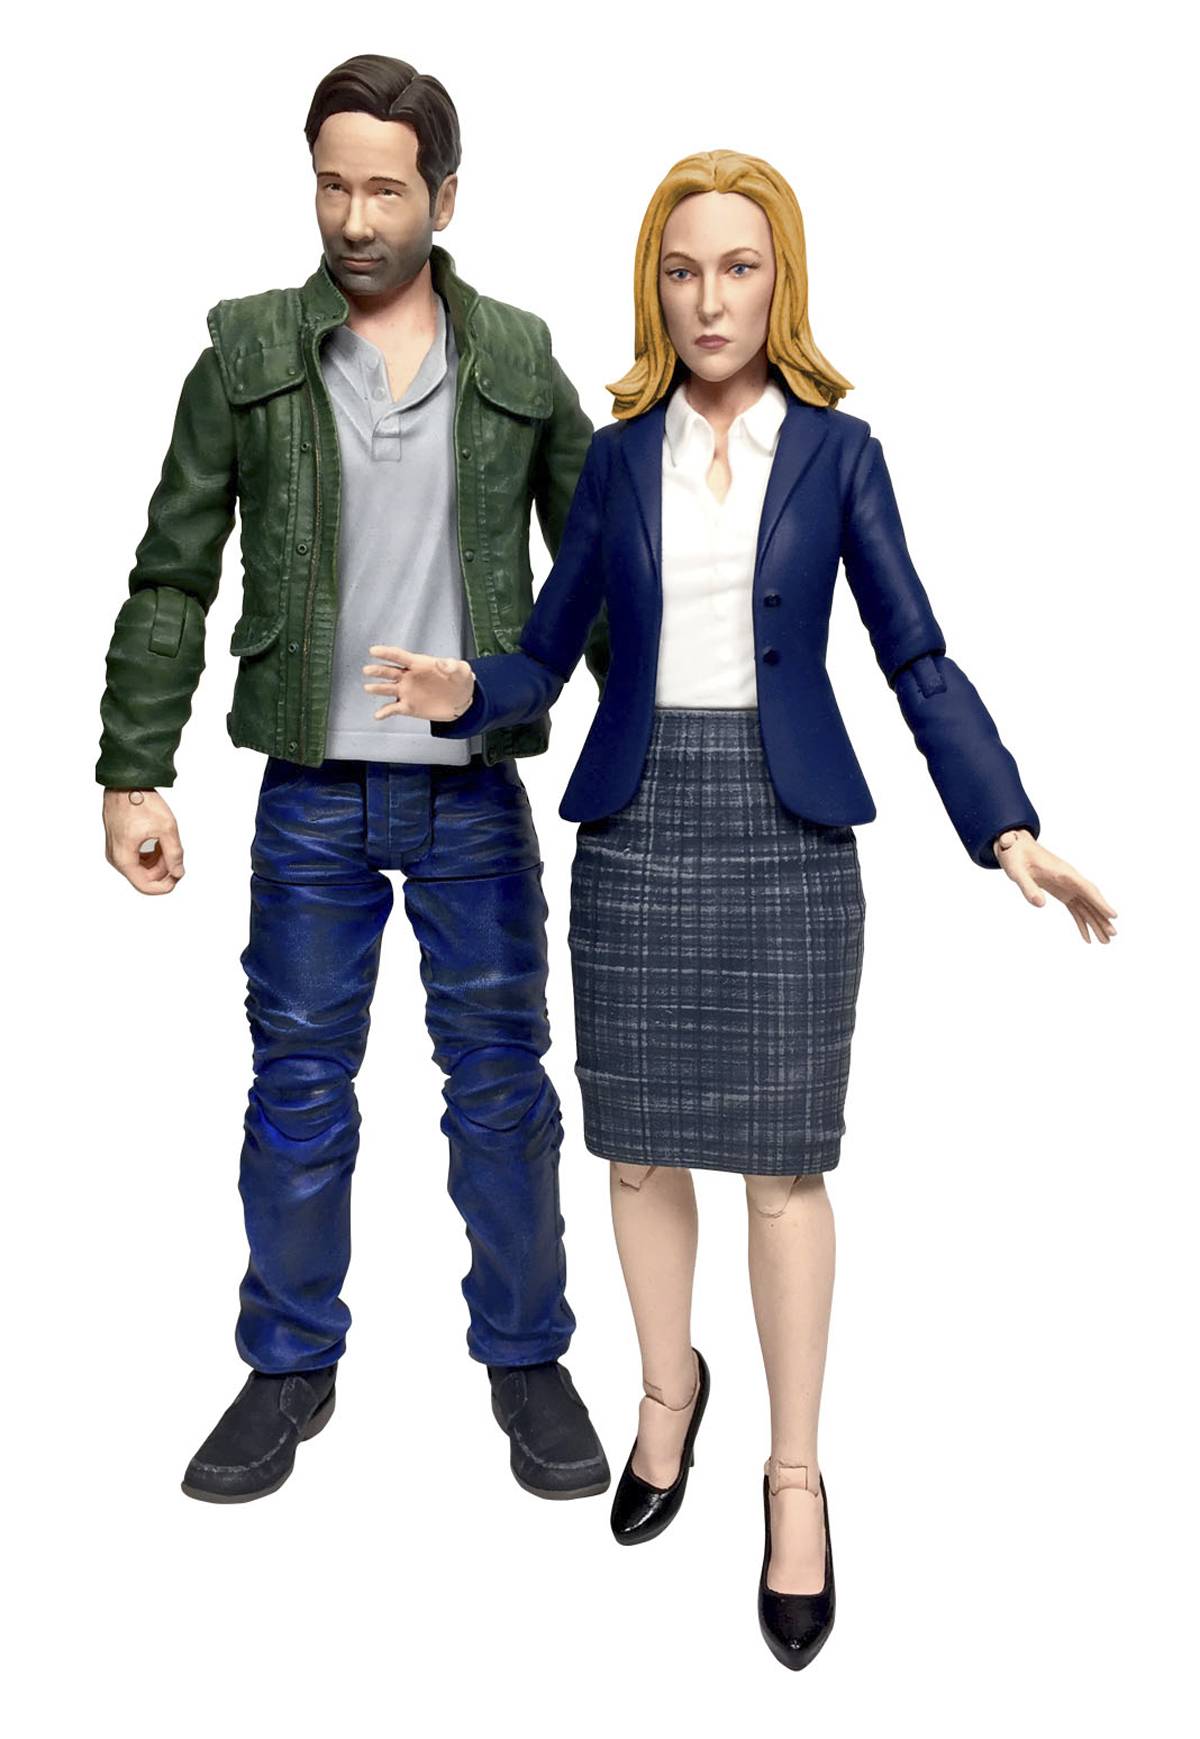 X-Files 2016 Action Figure Set